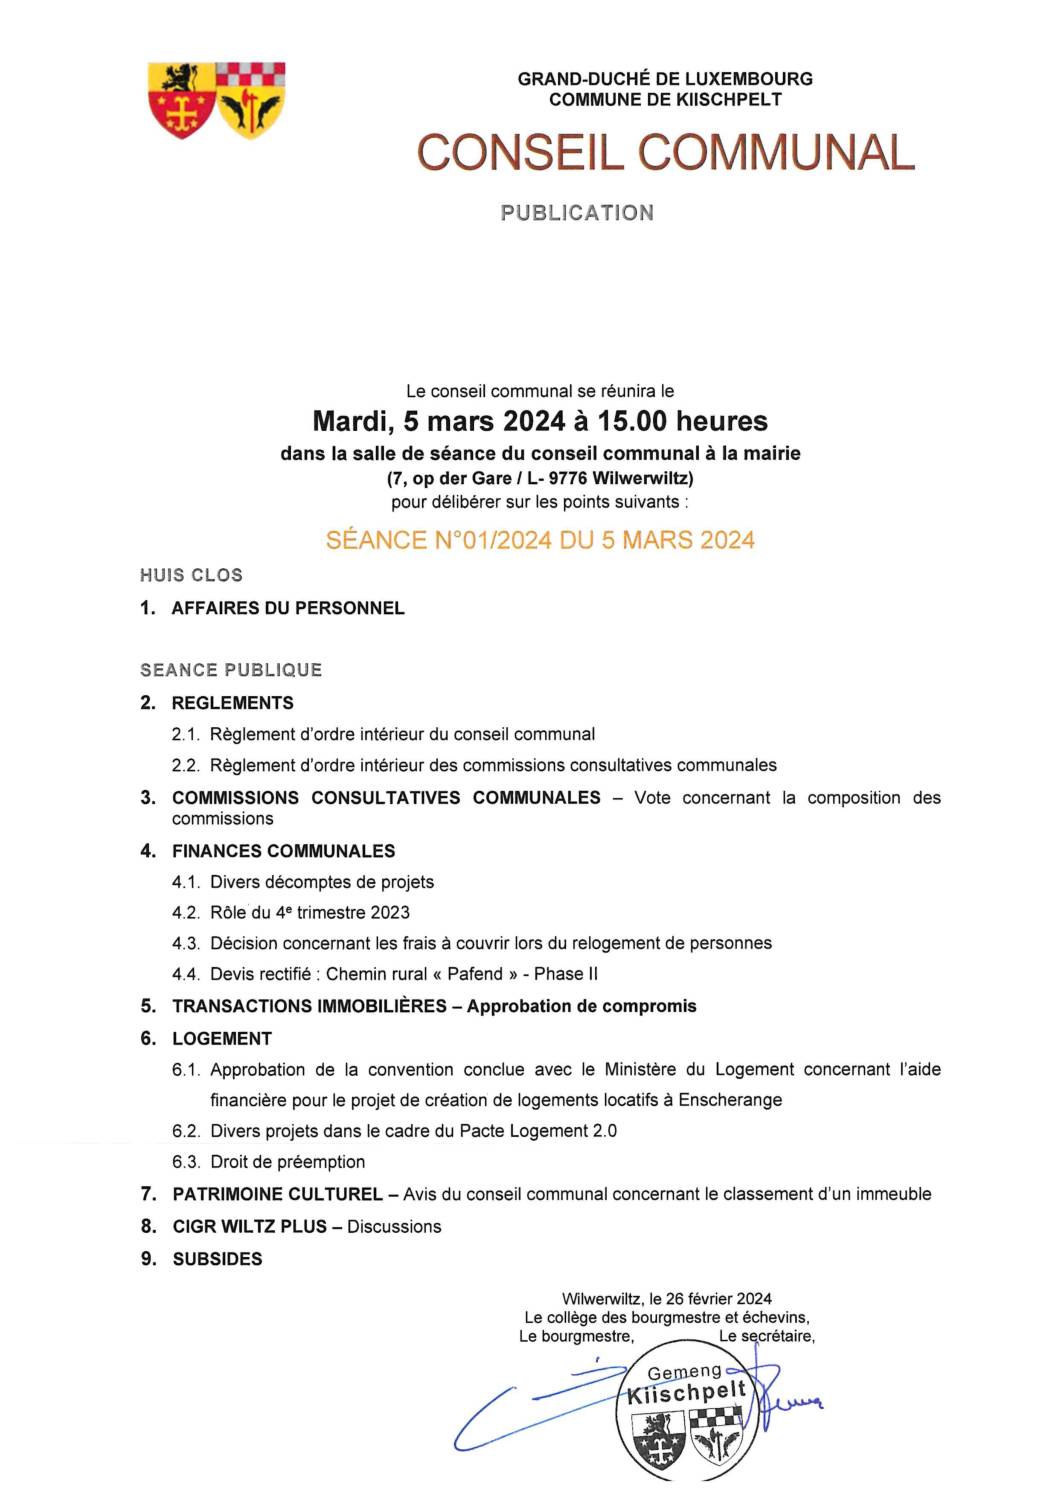 Conseil communal - Ordre du jour séance 01_2024 du 5 mars 2024